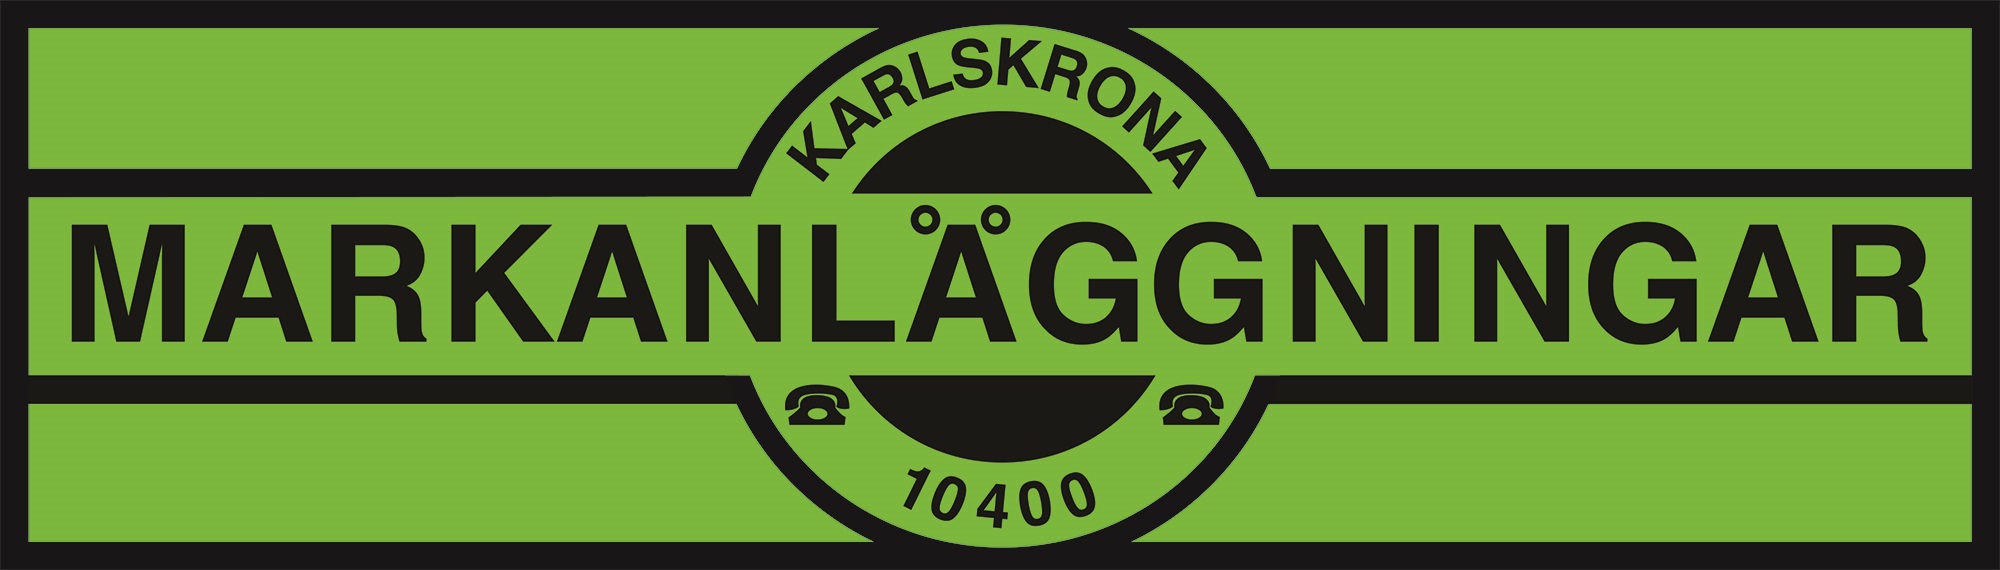 Karlskrona Markanläggningar AB - Blekinge